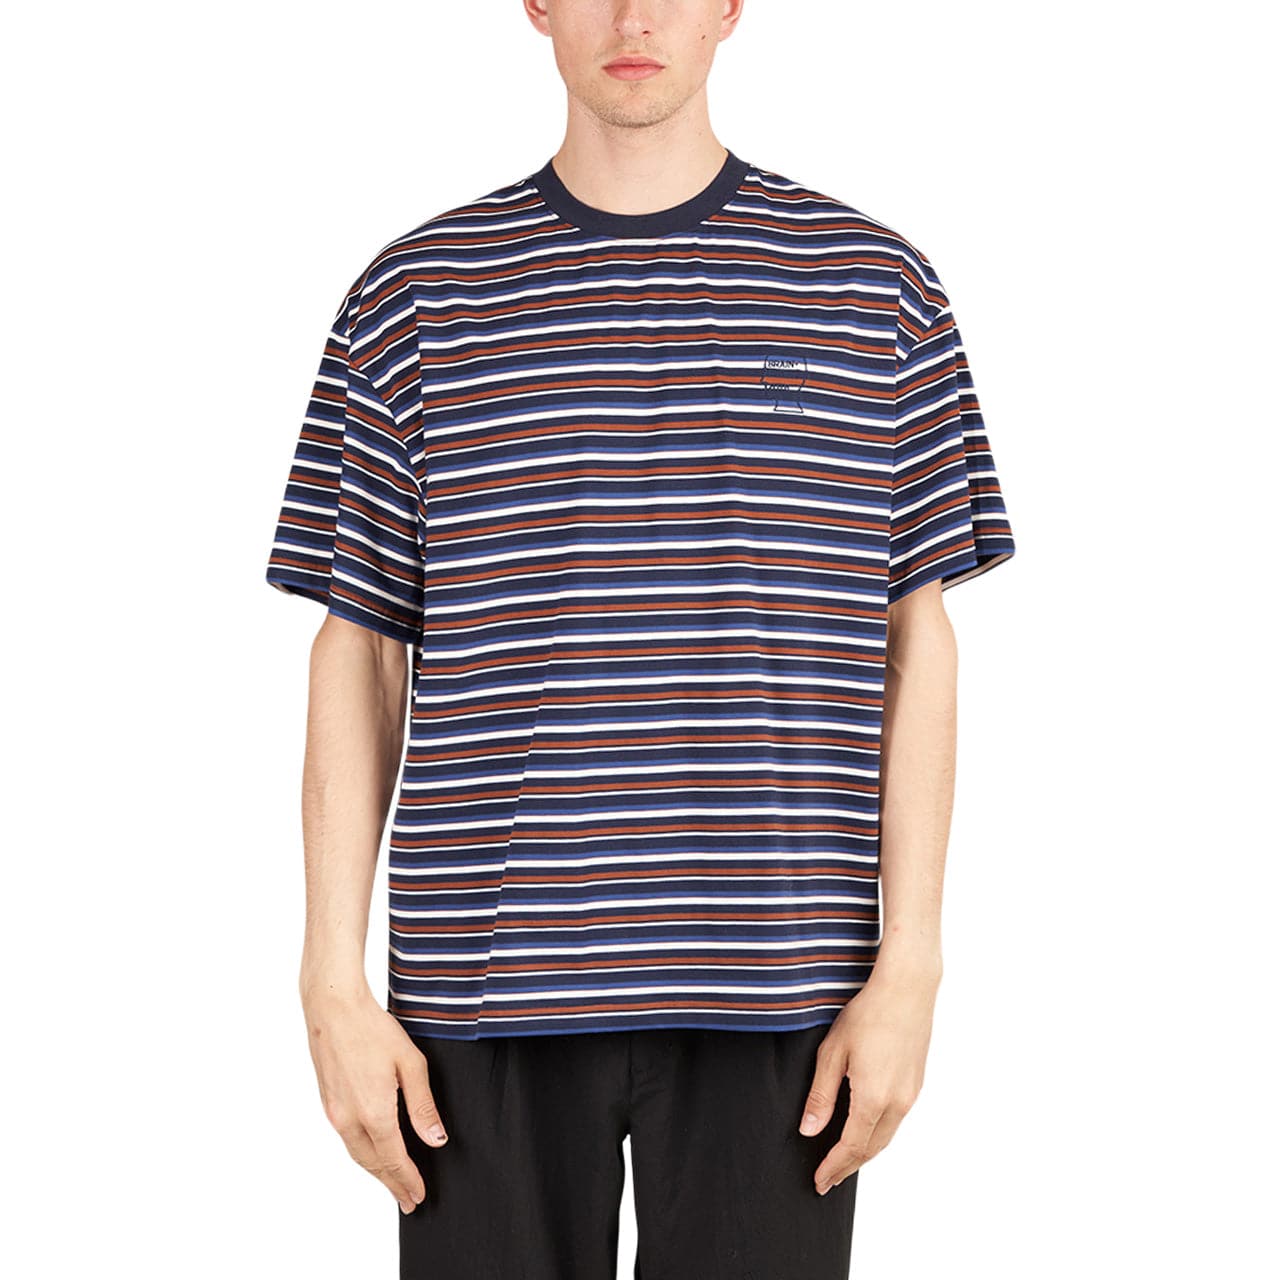 Brain Dead Nineties blocked Striped T-Shirt (Multi)  - Allike Store